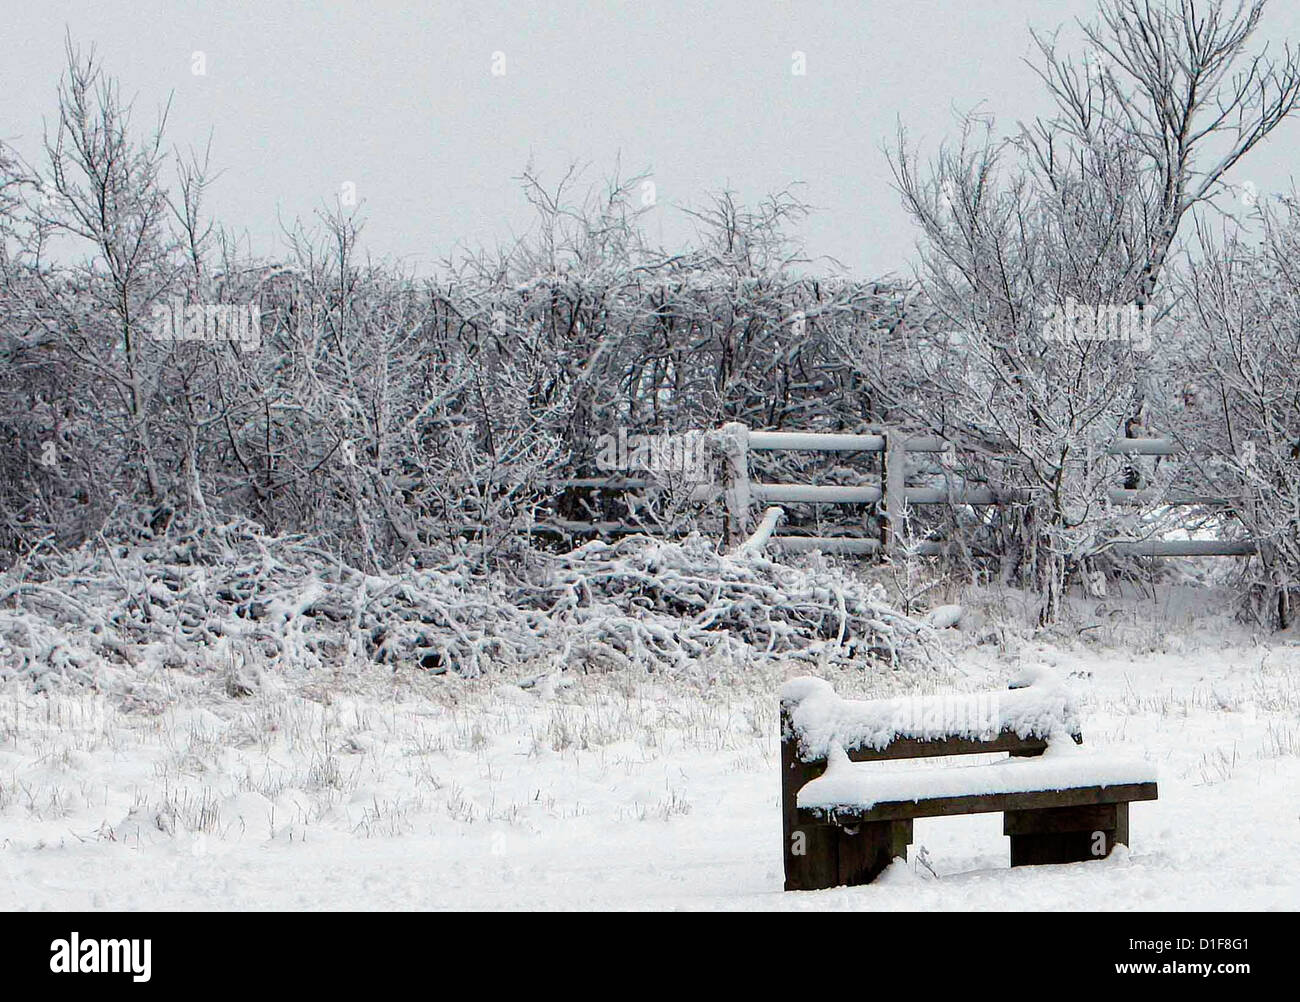 05.02.2012 La neige dans une Country Park Photo de James Galvin Banque D'Images